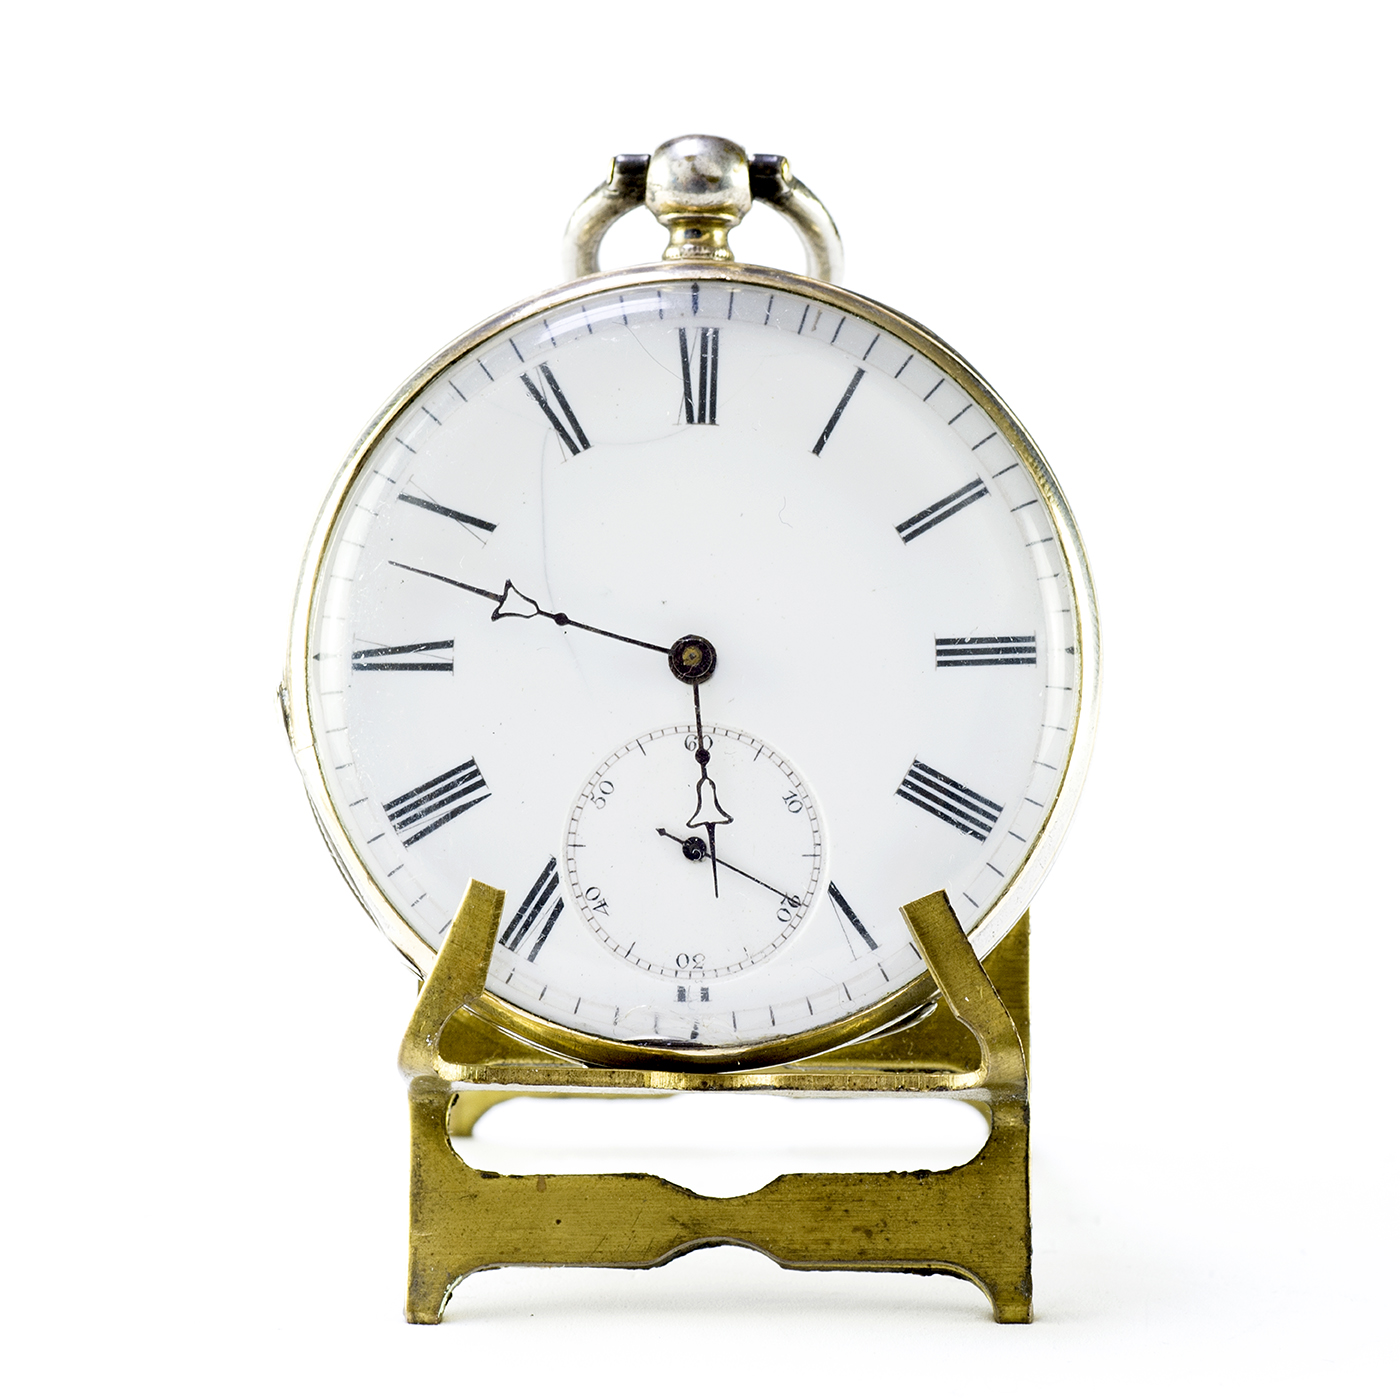 Reloj Suizo de Bolsillo, lepine. Suiza, ca. 1890